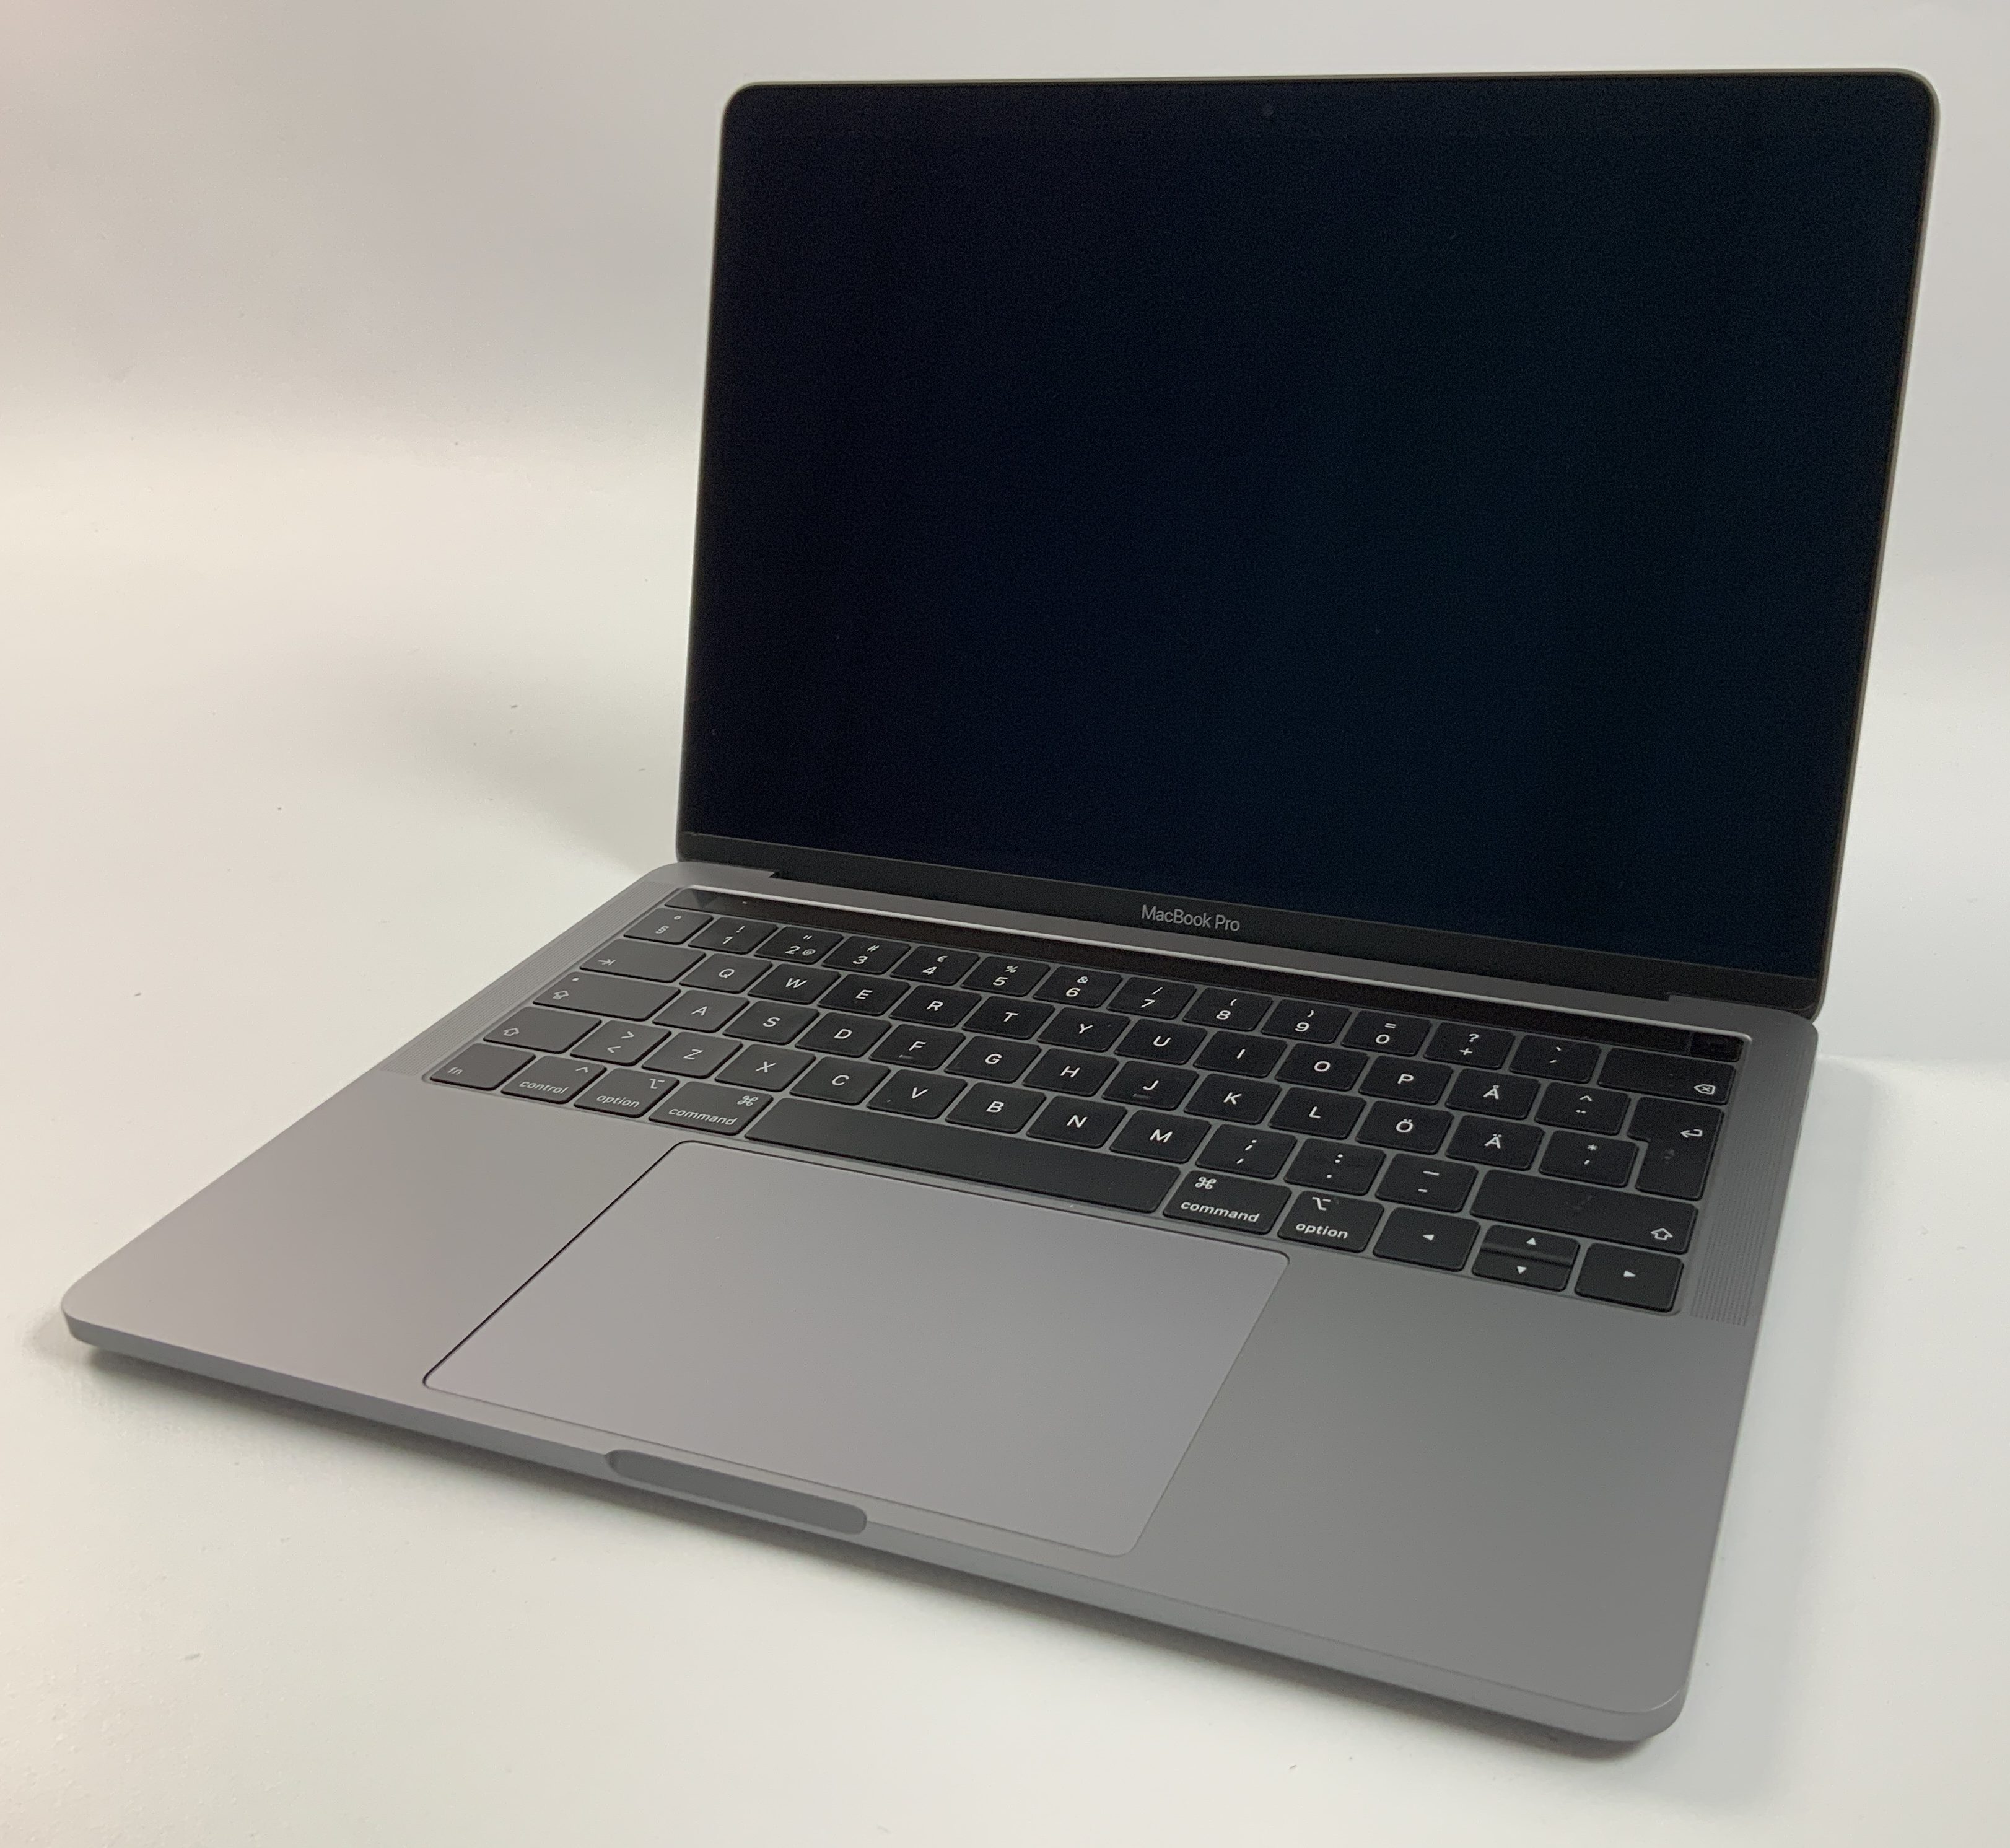 MacBook Pro 13" 4TBT Mid 2018 (Intel Quad-Core i5 2.3 GHz 8 GB RAM 512 GB SSD), Space Gray, Intel Quad-Core i5 2.3 GHz, 8 GB RAM, 512 GB SSD, Kuva 1